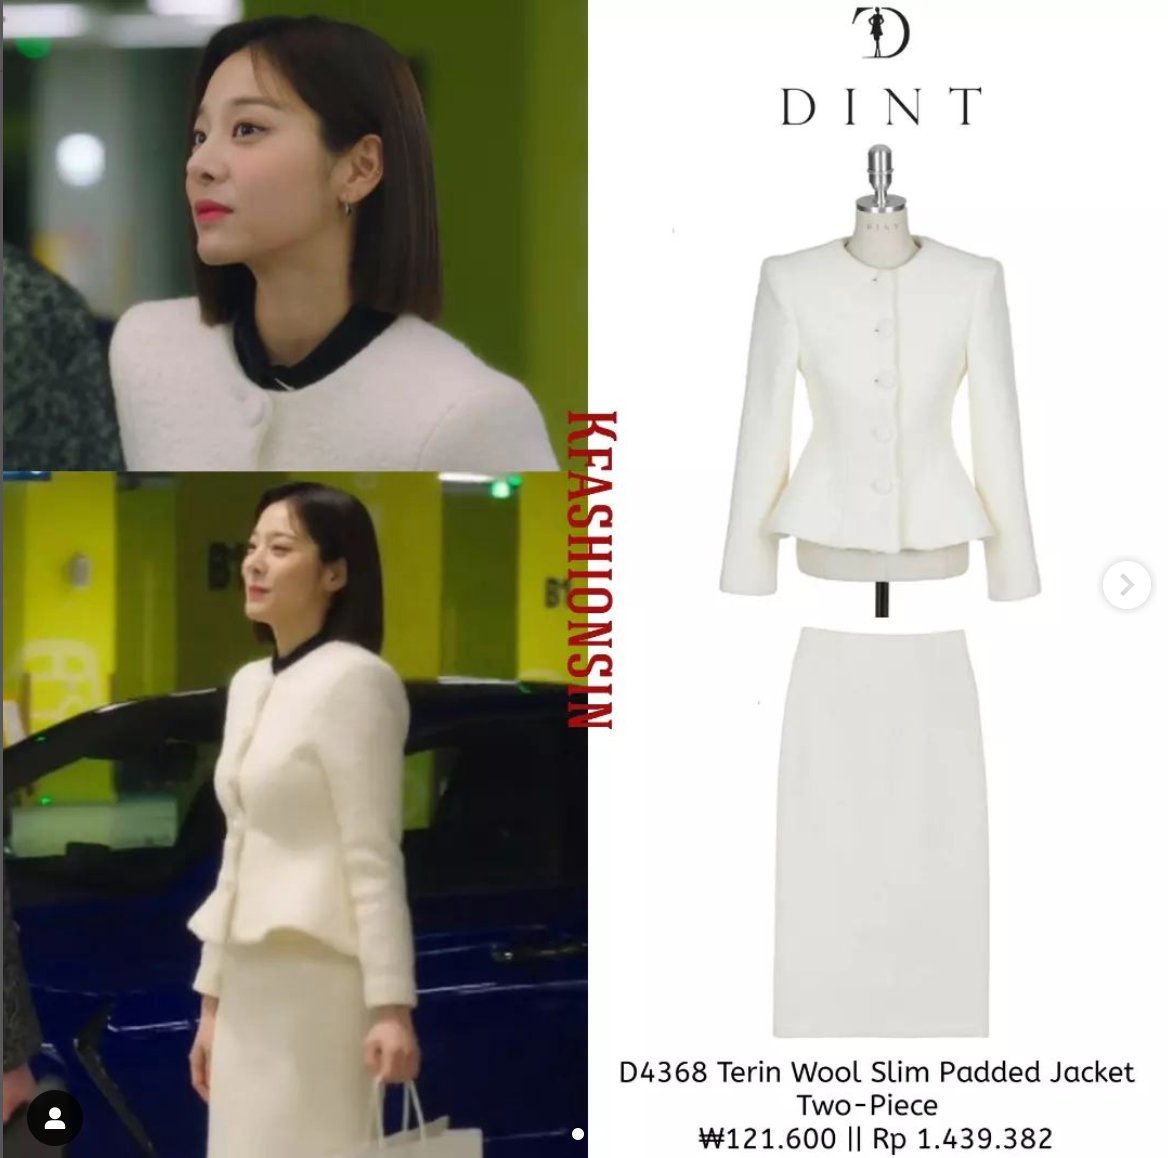 Một trong những outfit ấn tượng nhất của Jin Young Seo là set áo với váy trắng dáng peplum nhấn eo tạo cảm giác thanh thoát, gợi cảm.